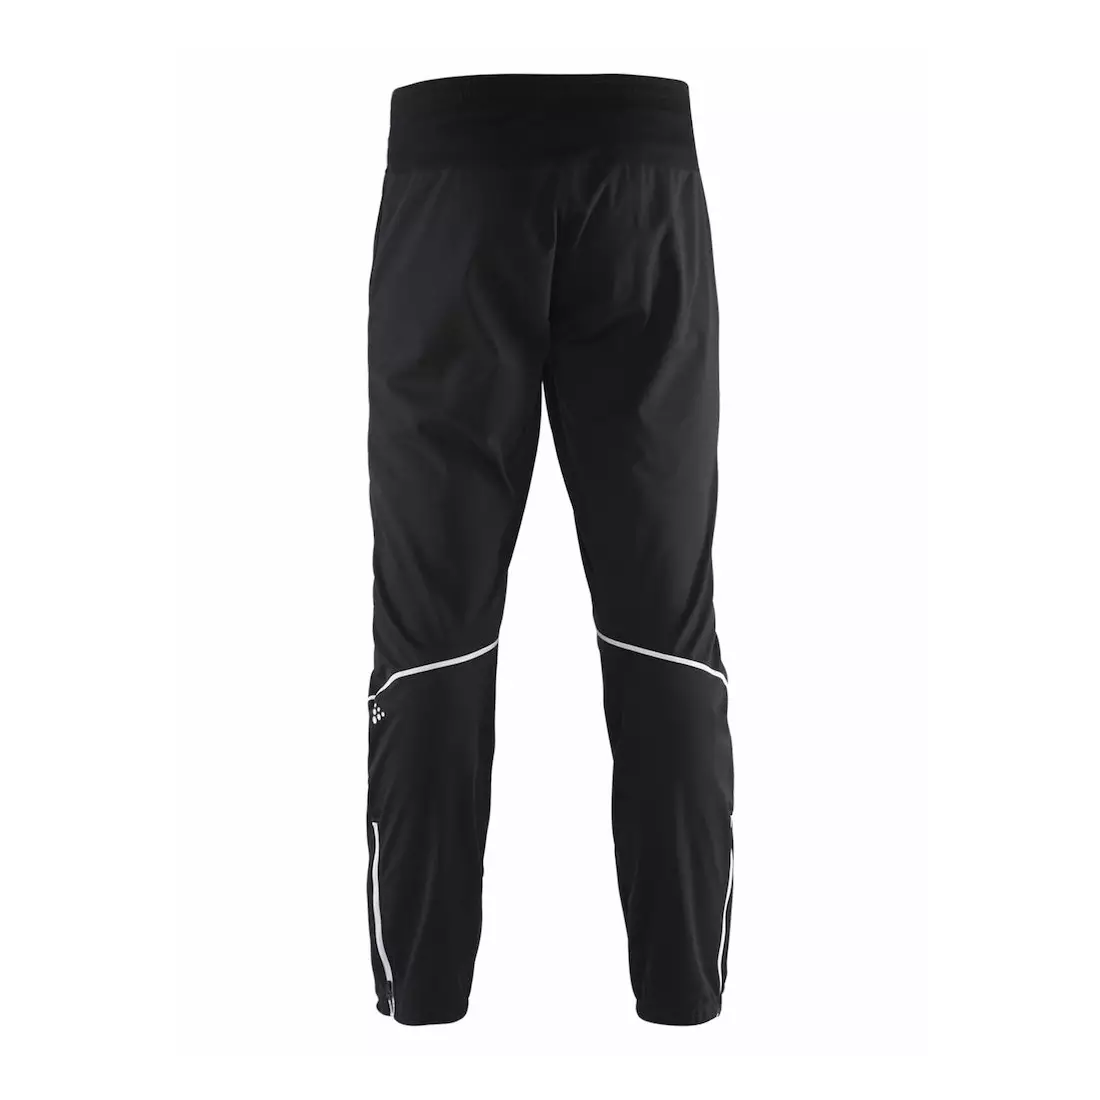 CRAFT XC Force Pant pánské zateplené sportovní kalhoty 1905250-999900